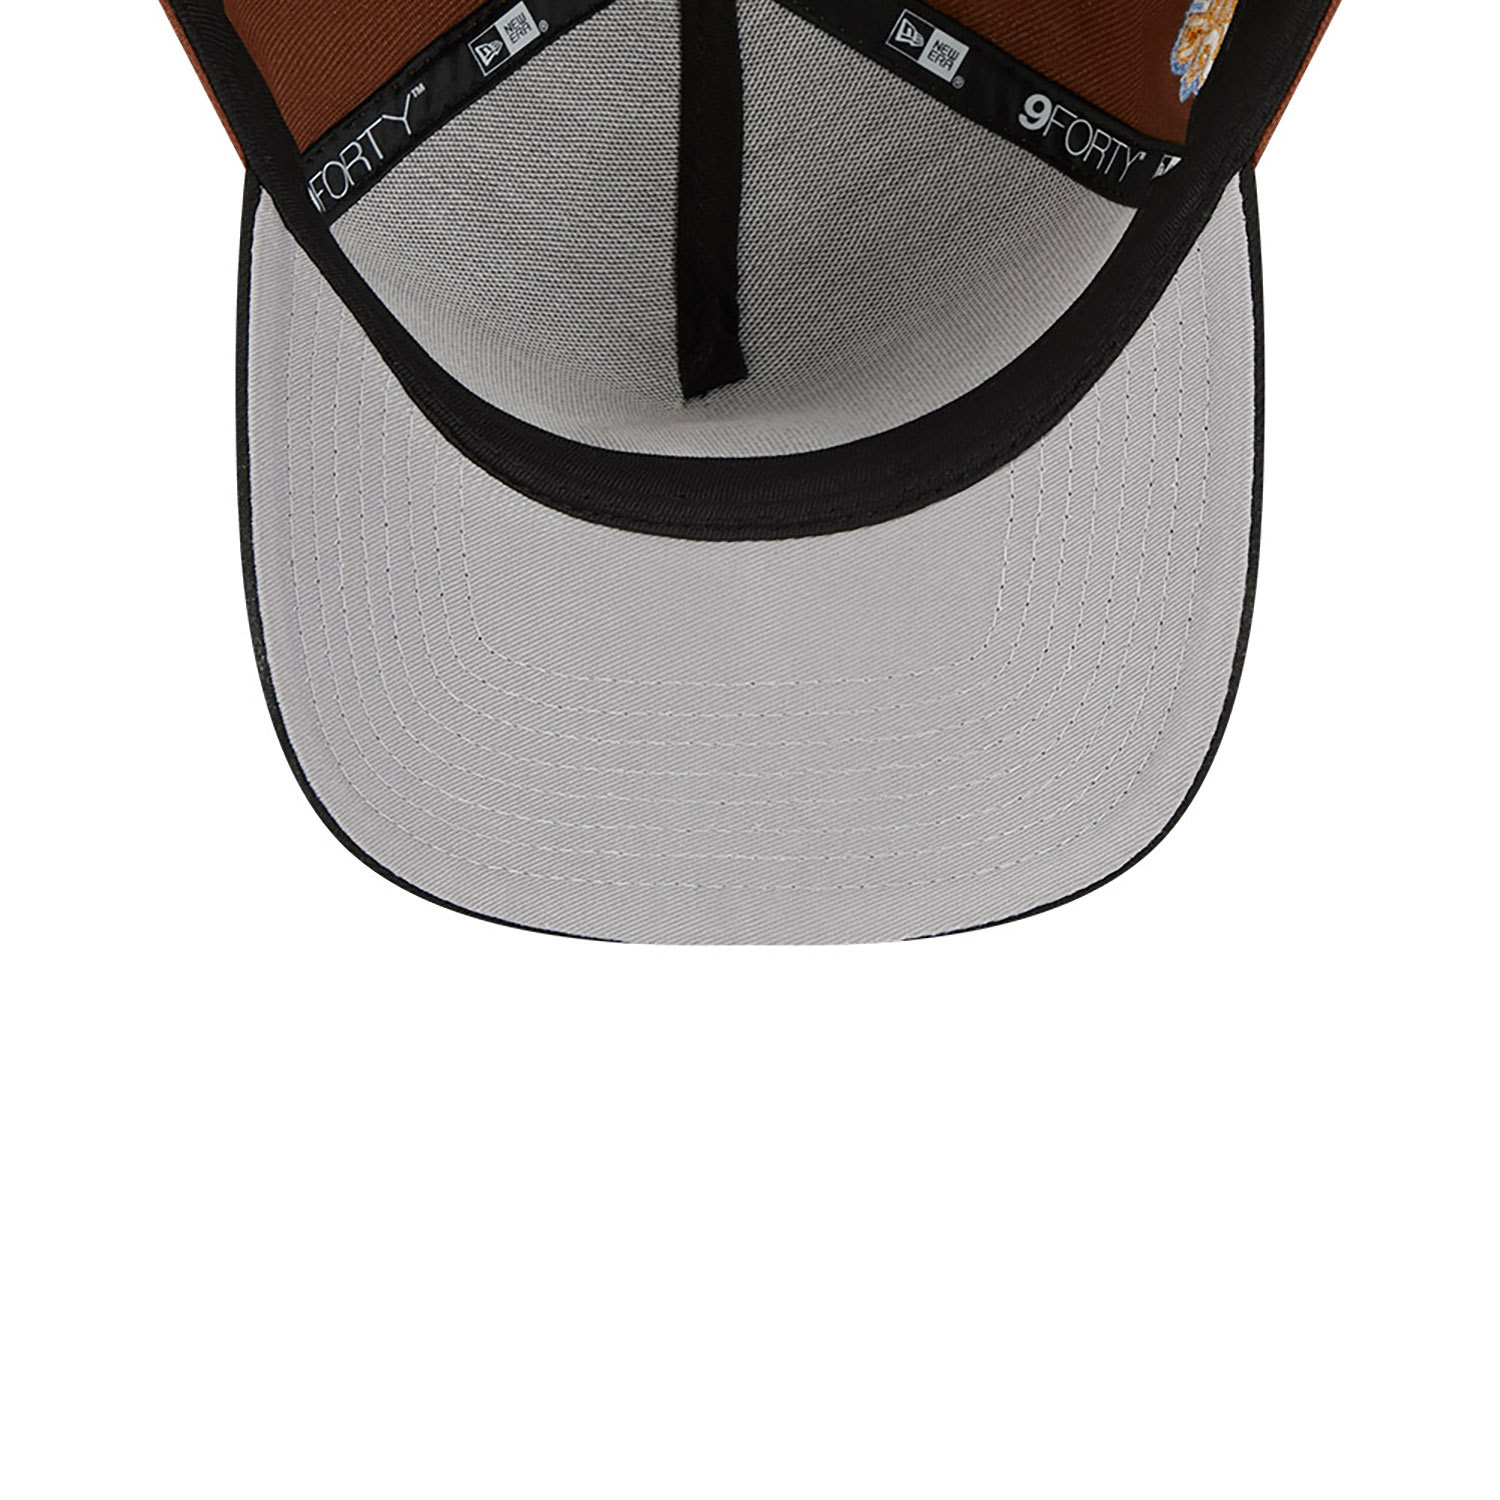 Men's New Era Brown York Yankees Harvest A-Frame 9FORTY Adjustable Hat